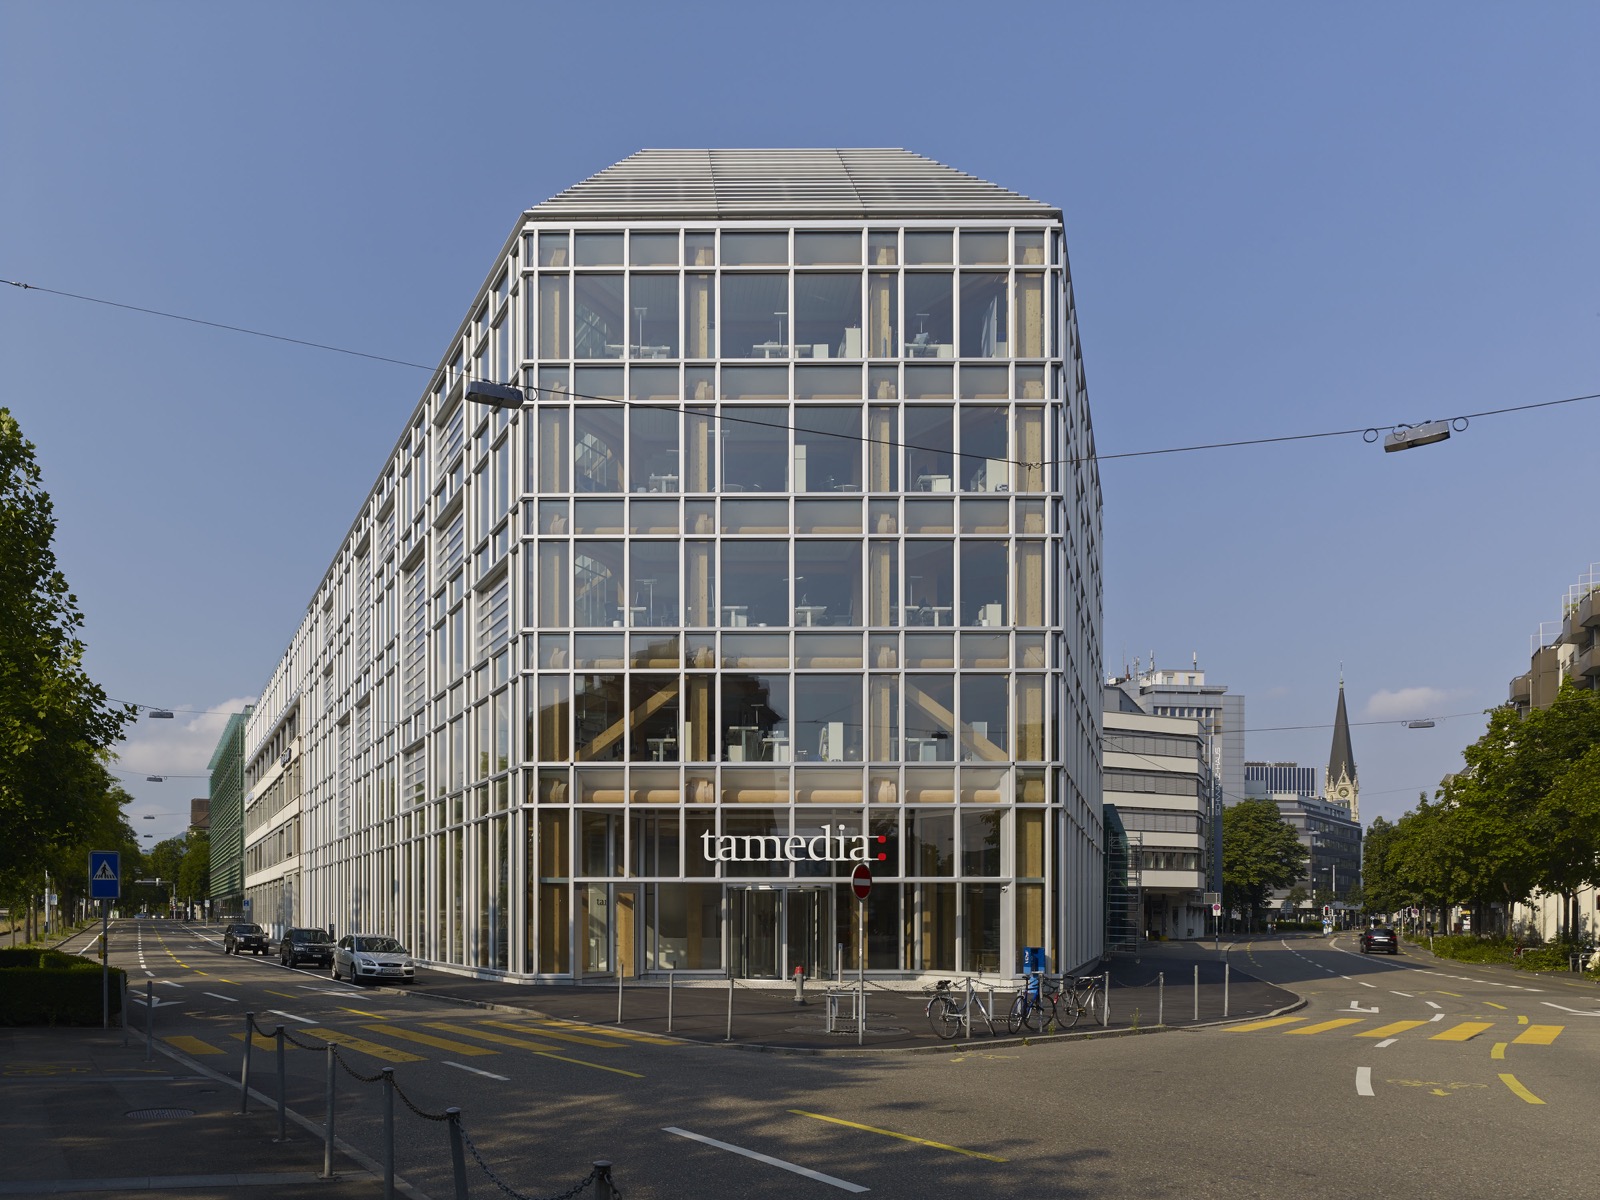 Tamedia Medienhaus, Skelettbauweise, Zürich, Shigeru Ban Architects Europe